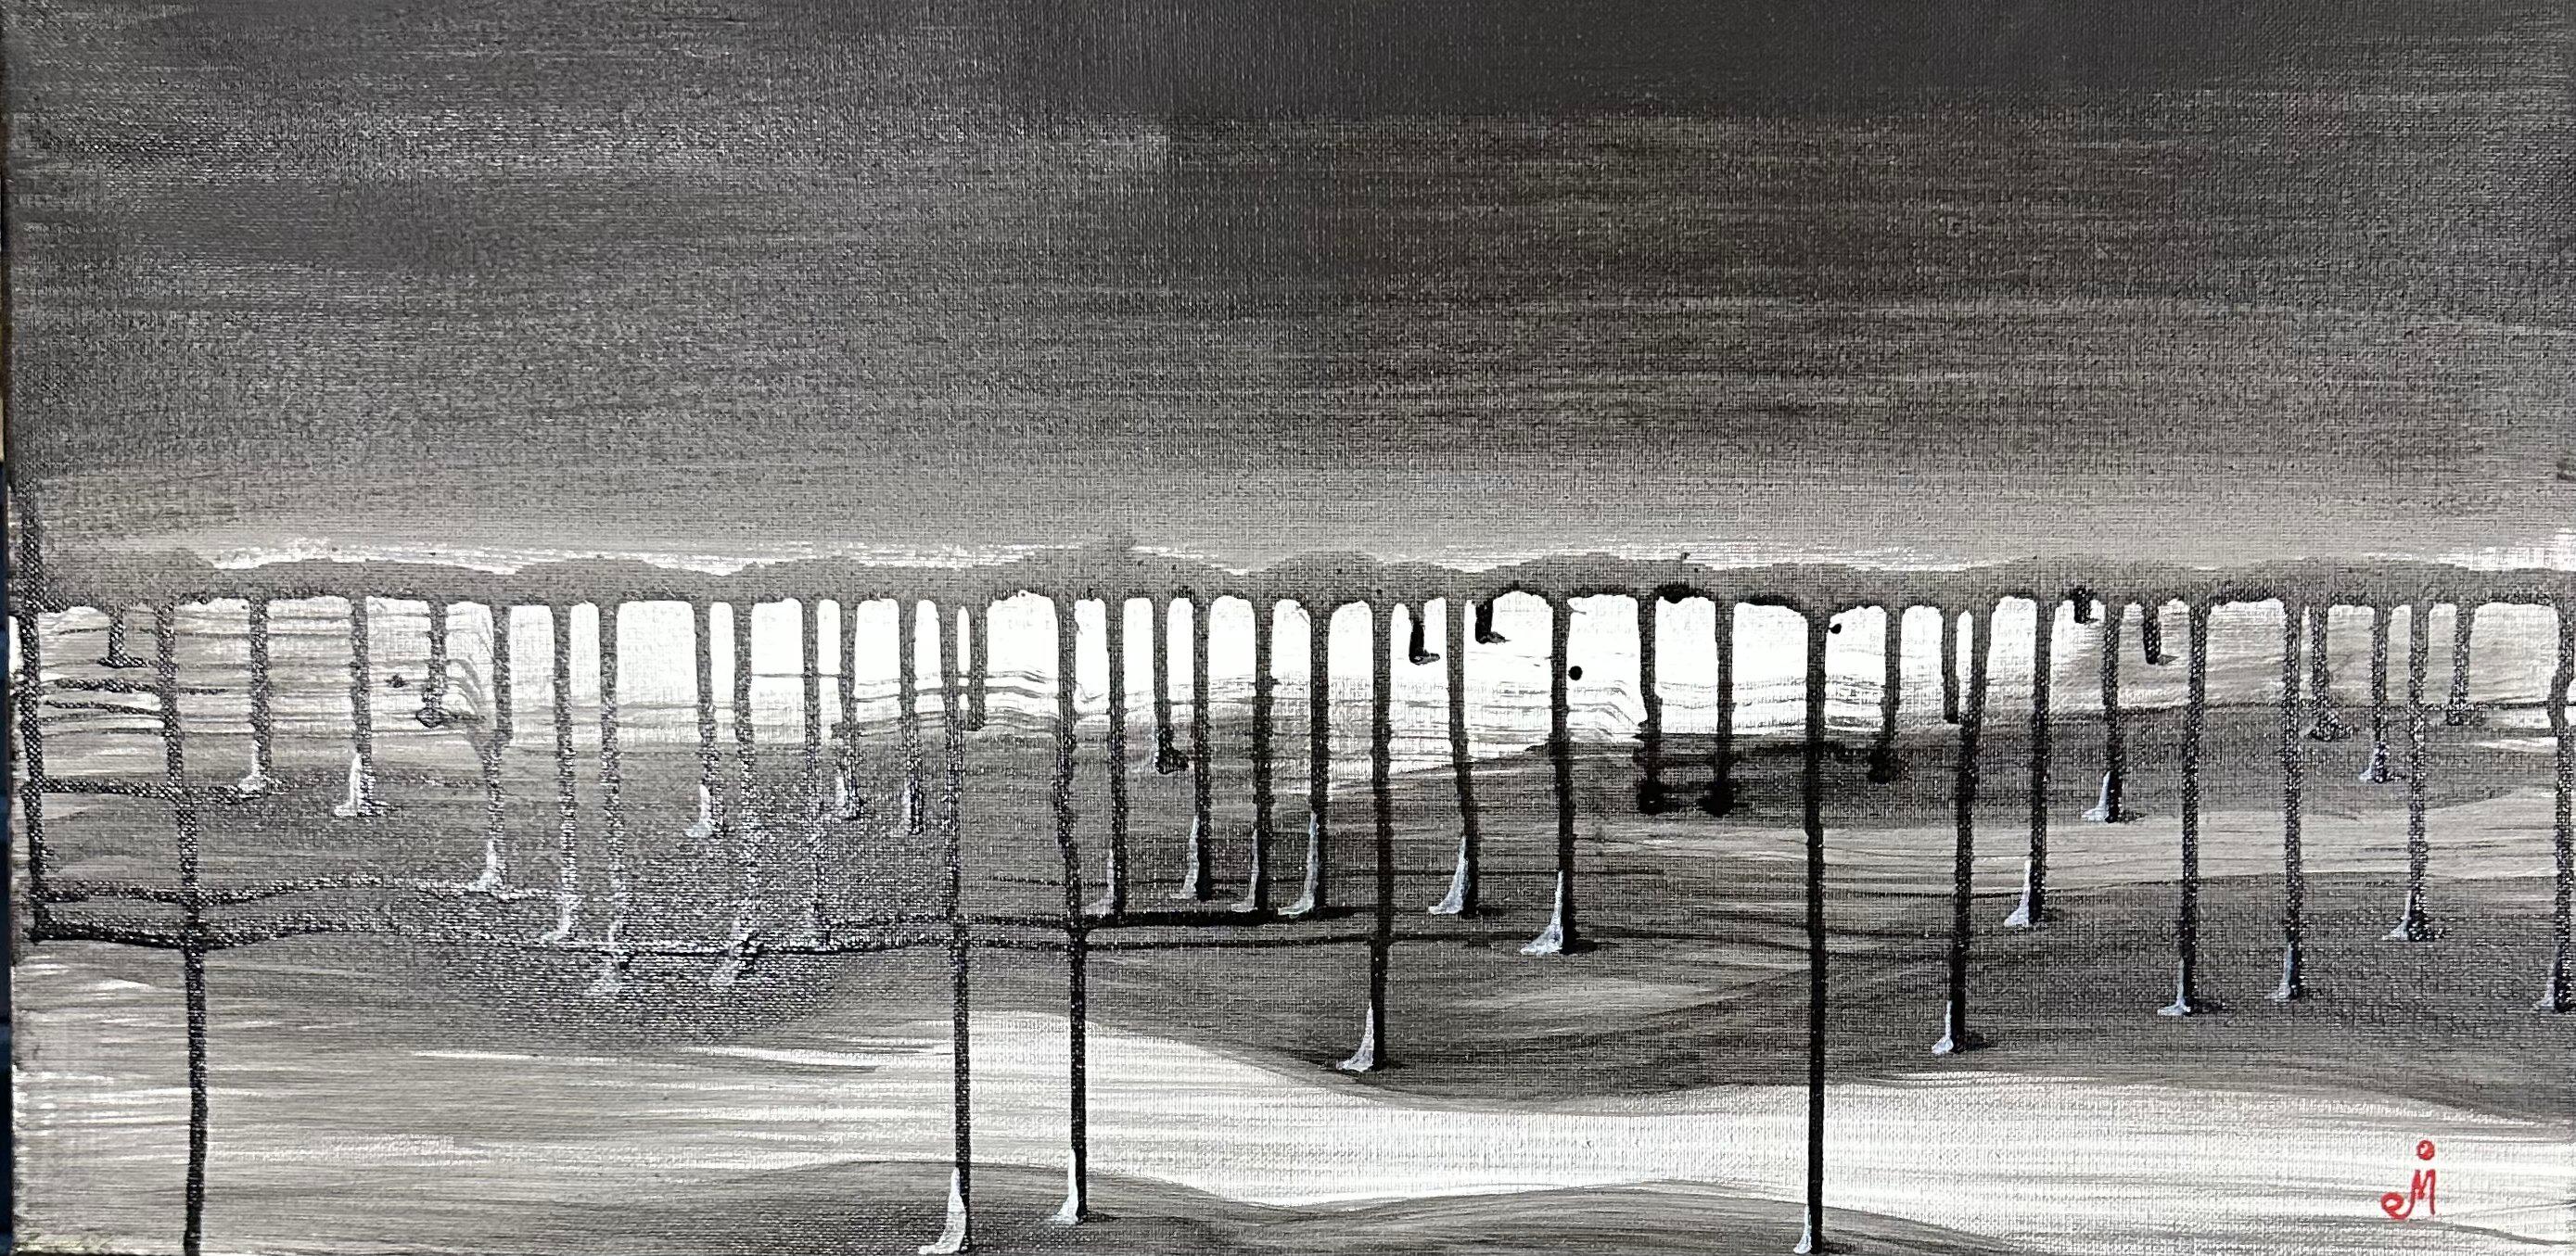 J. Oscar Molina Abstract Painting - Raindrops: Greydrops